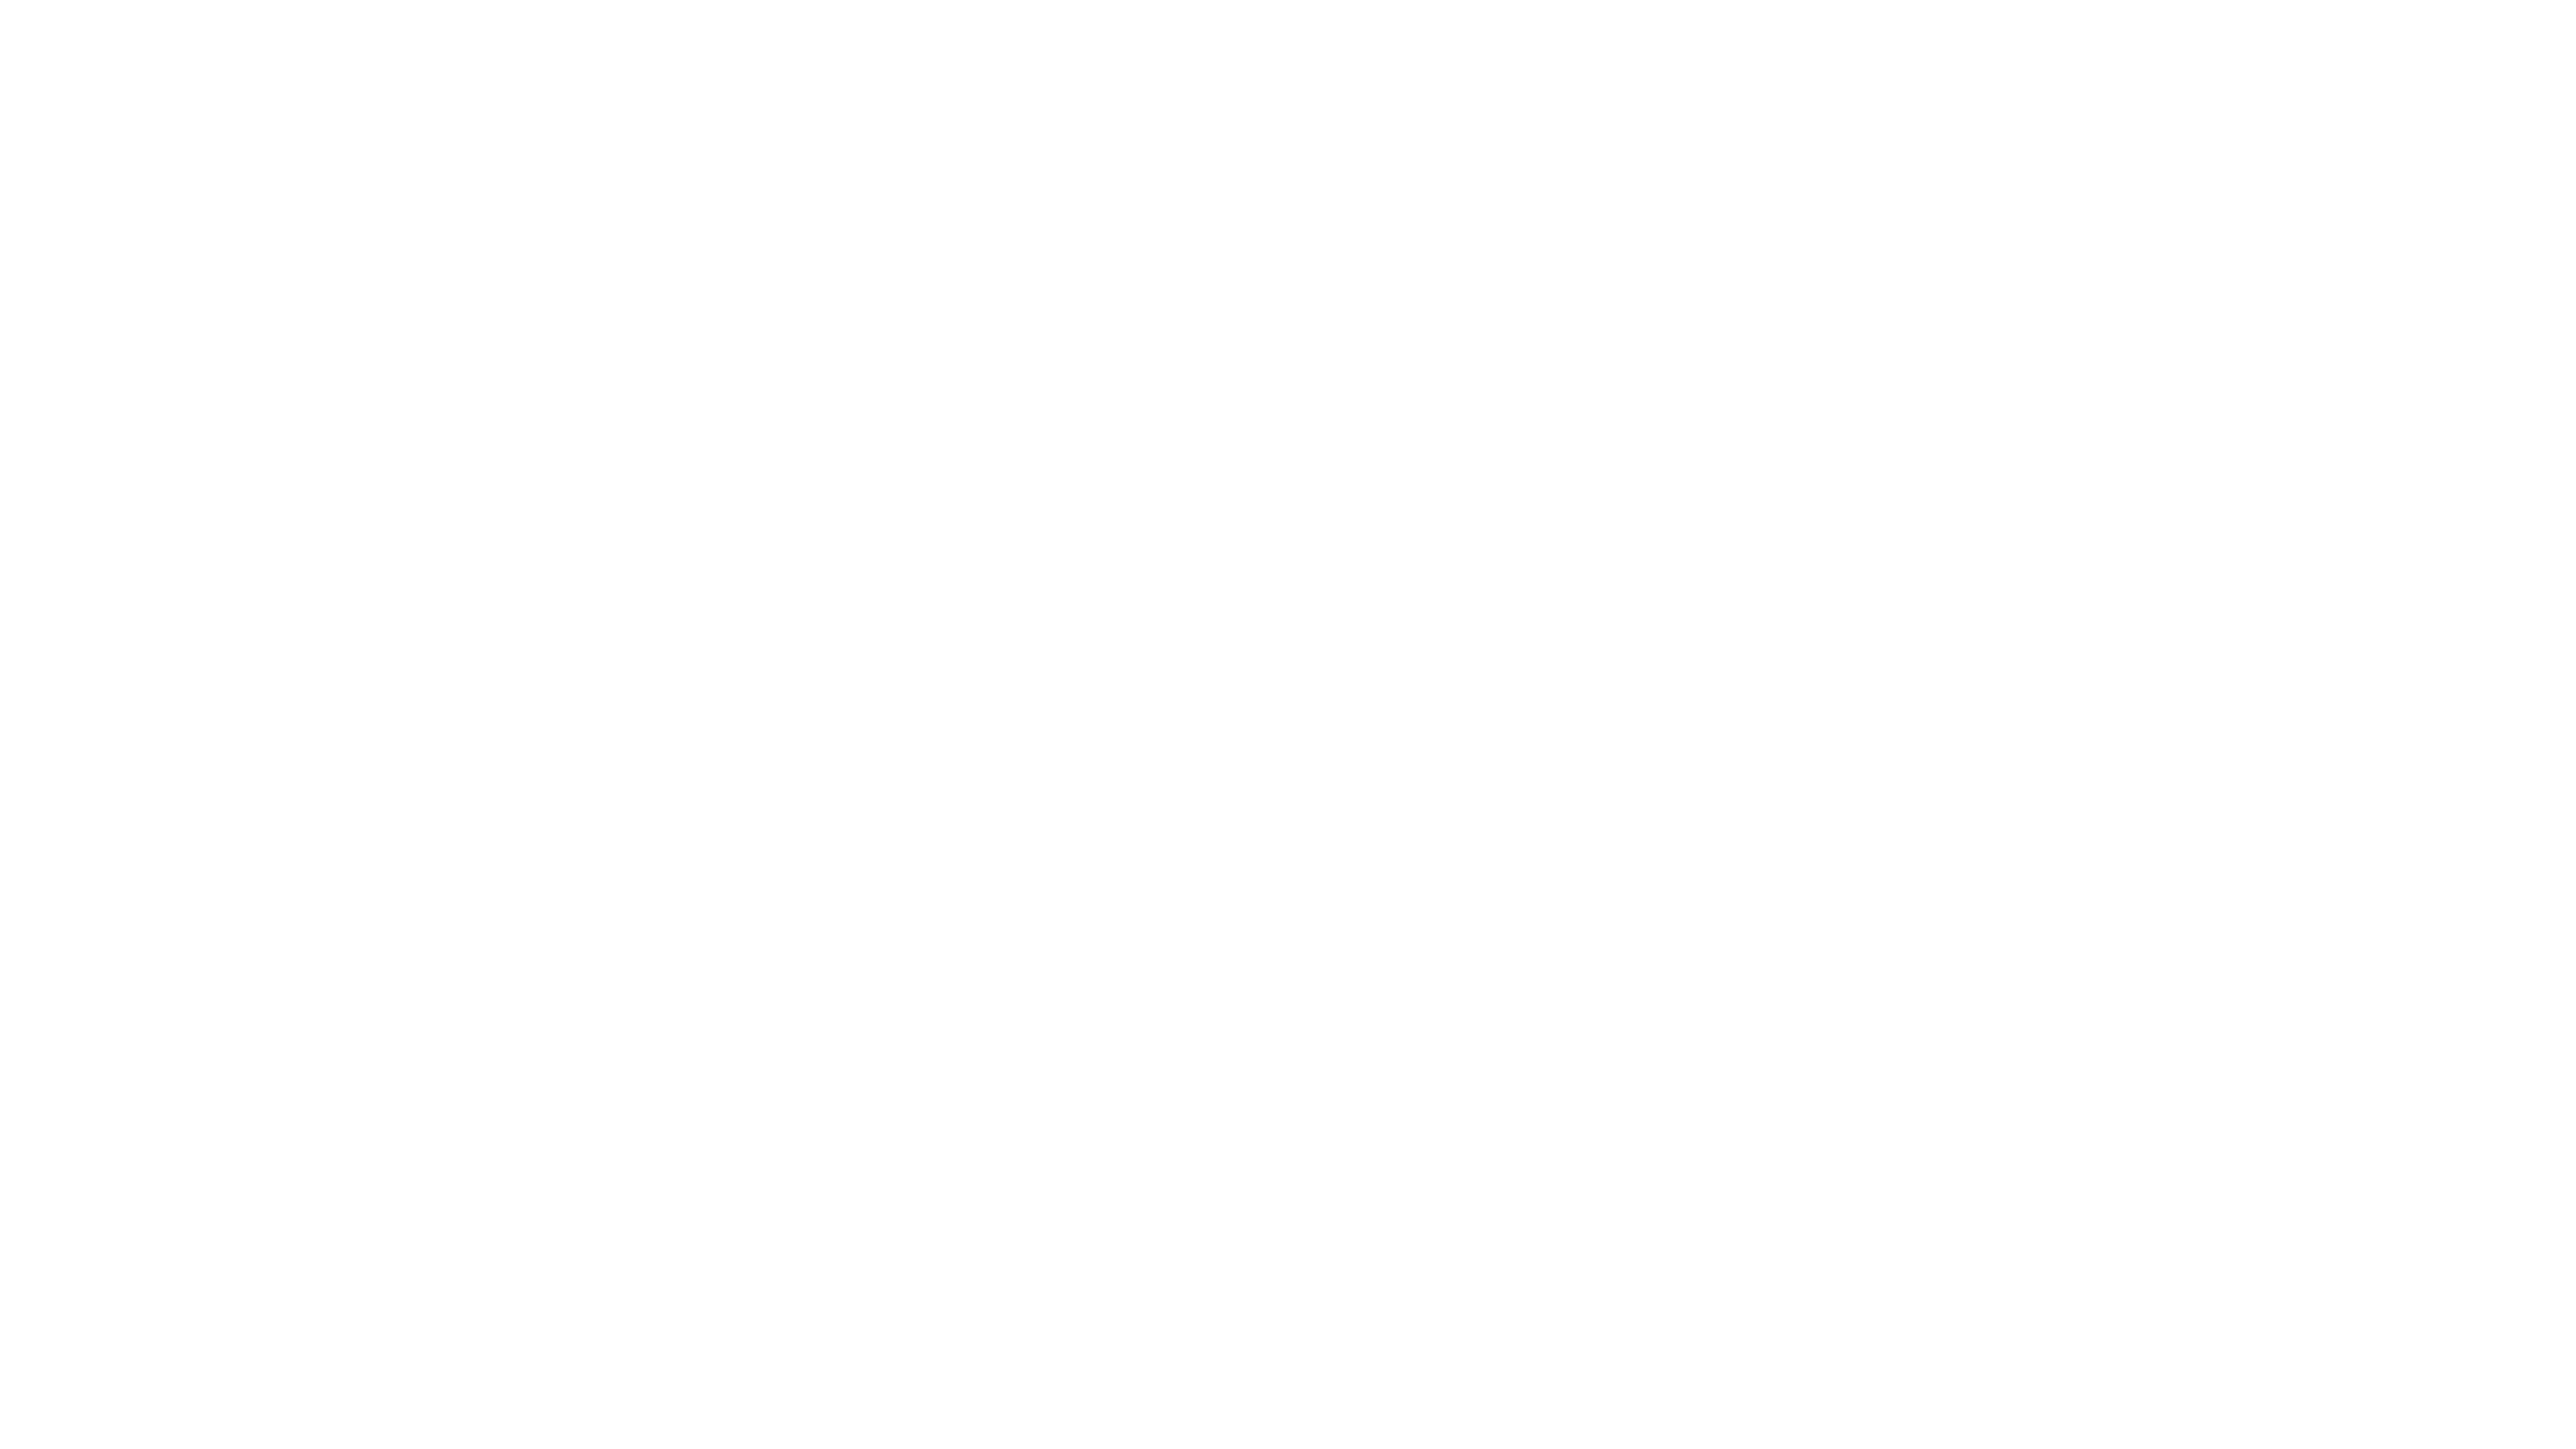 PeacePlayerLogo-white